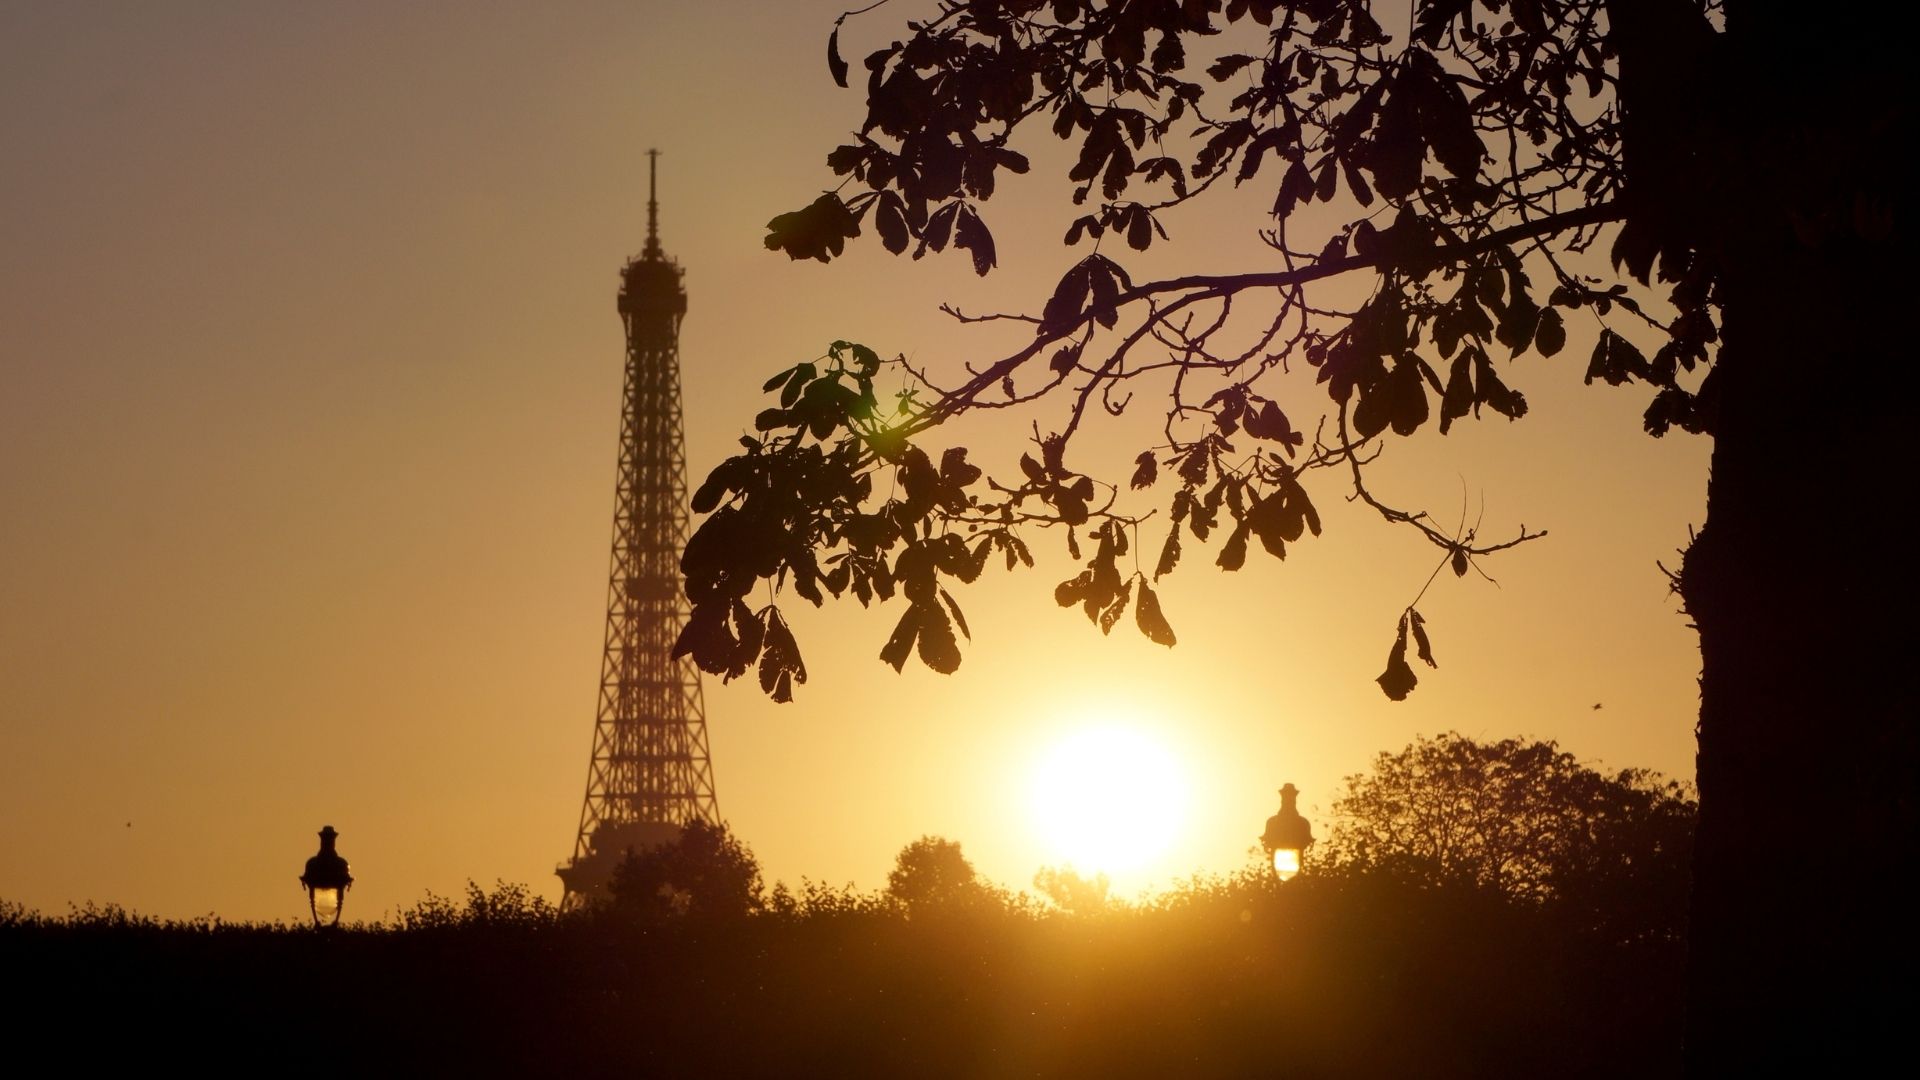 France : jamais chaleur n’a été aussi forte au printemps